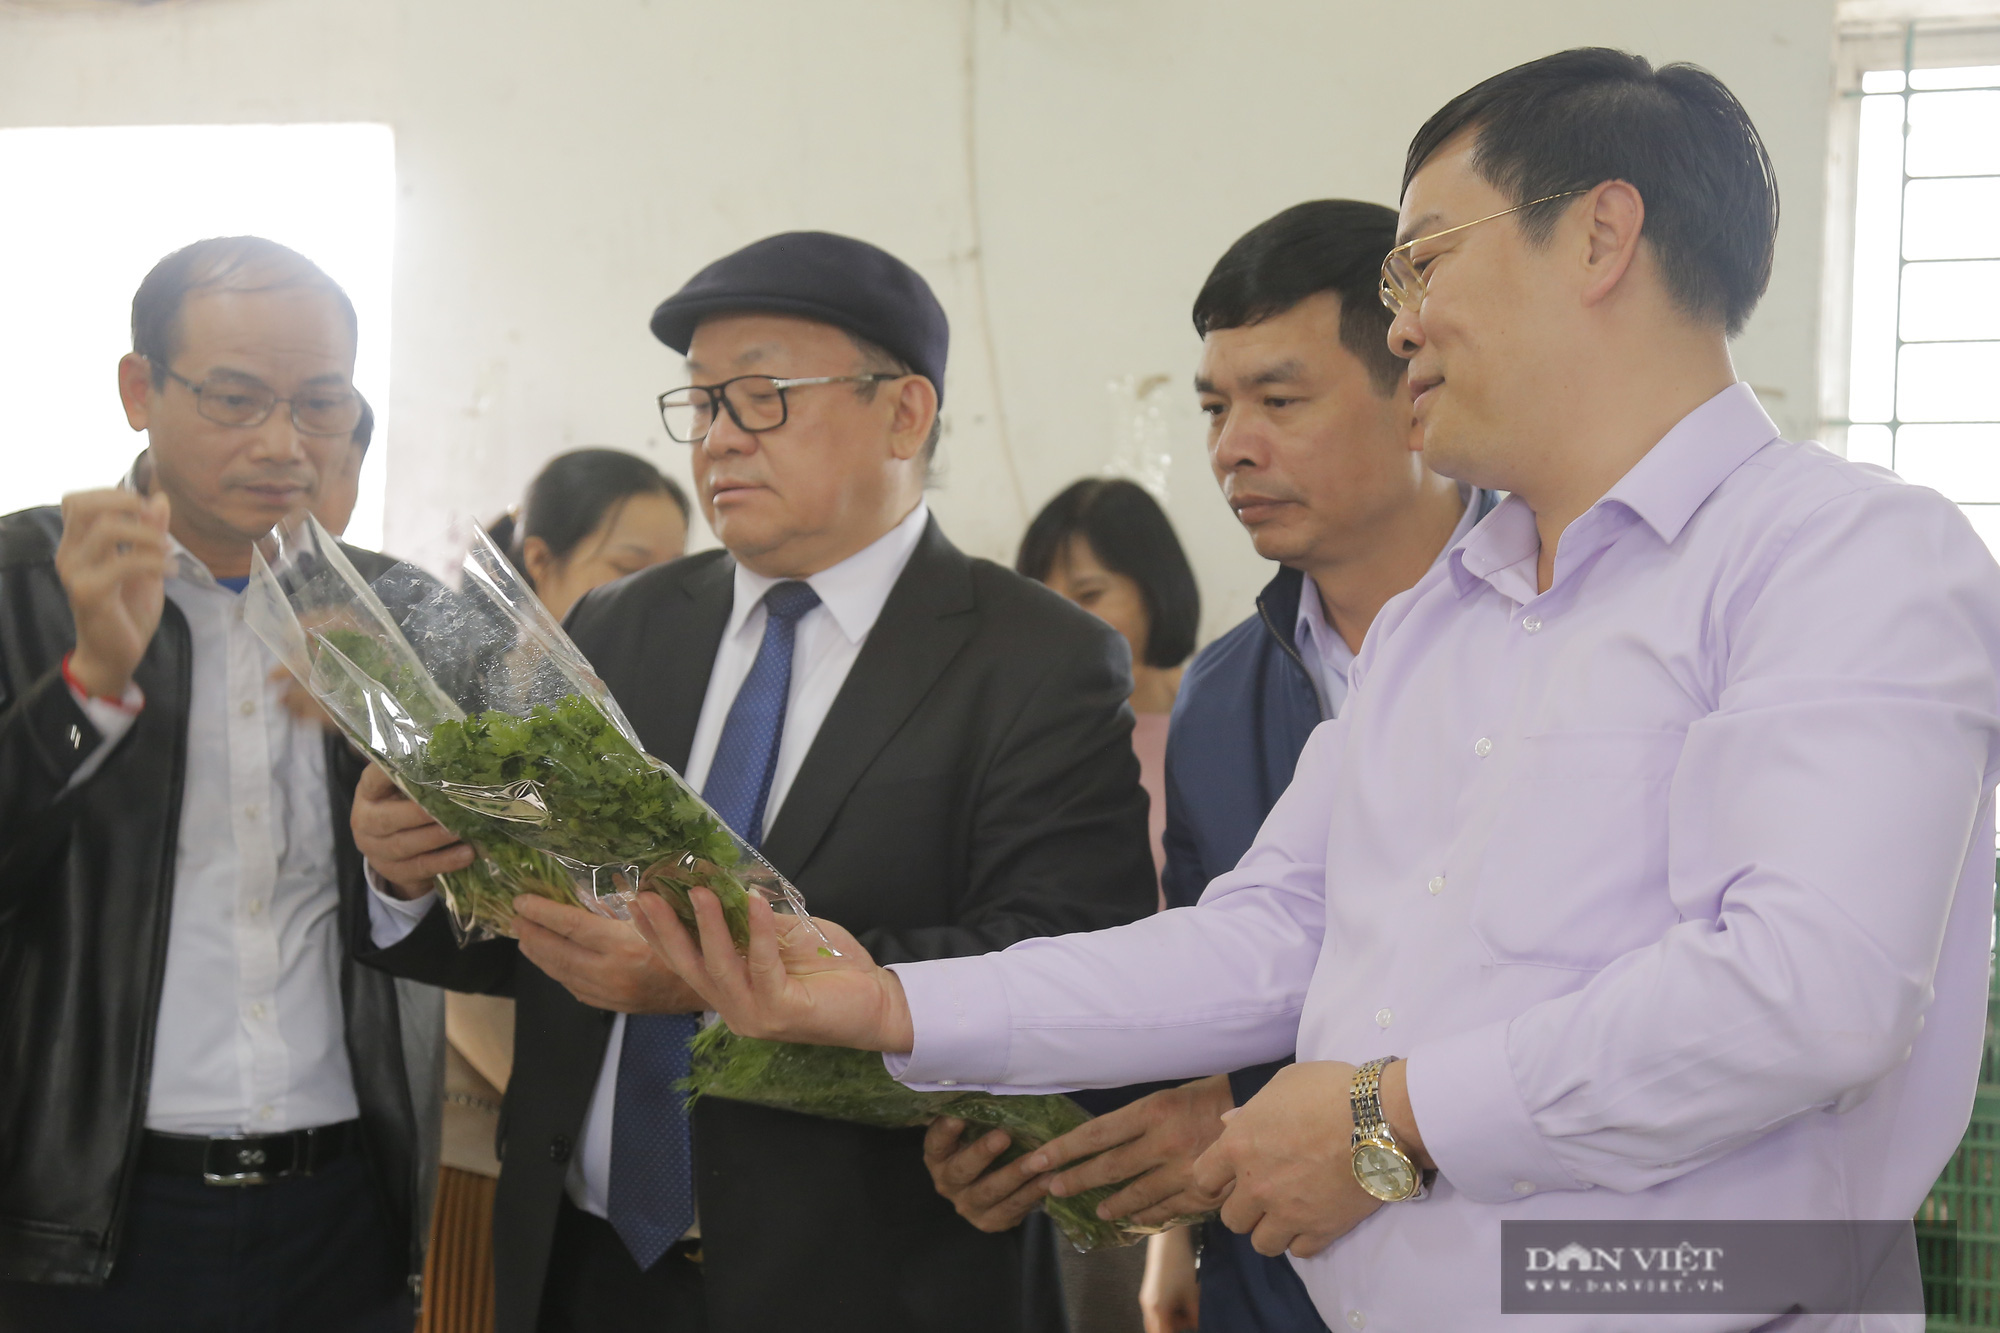 Phú Thọ: Chủ tịch Hội NDVN Thào Xuân Sùng xuống đồng, trò chuyện cùng nông dân về cách trồng rau an toàn - Ảnh 4.